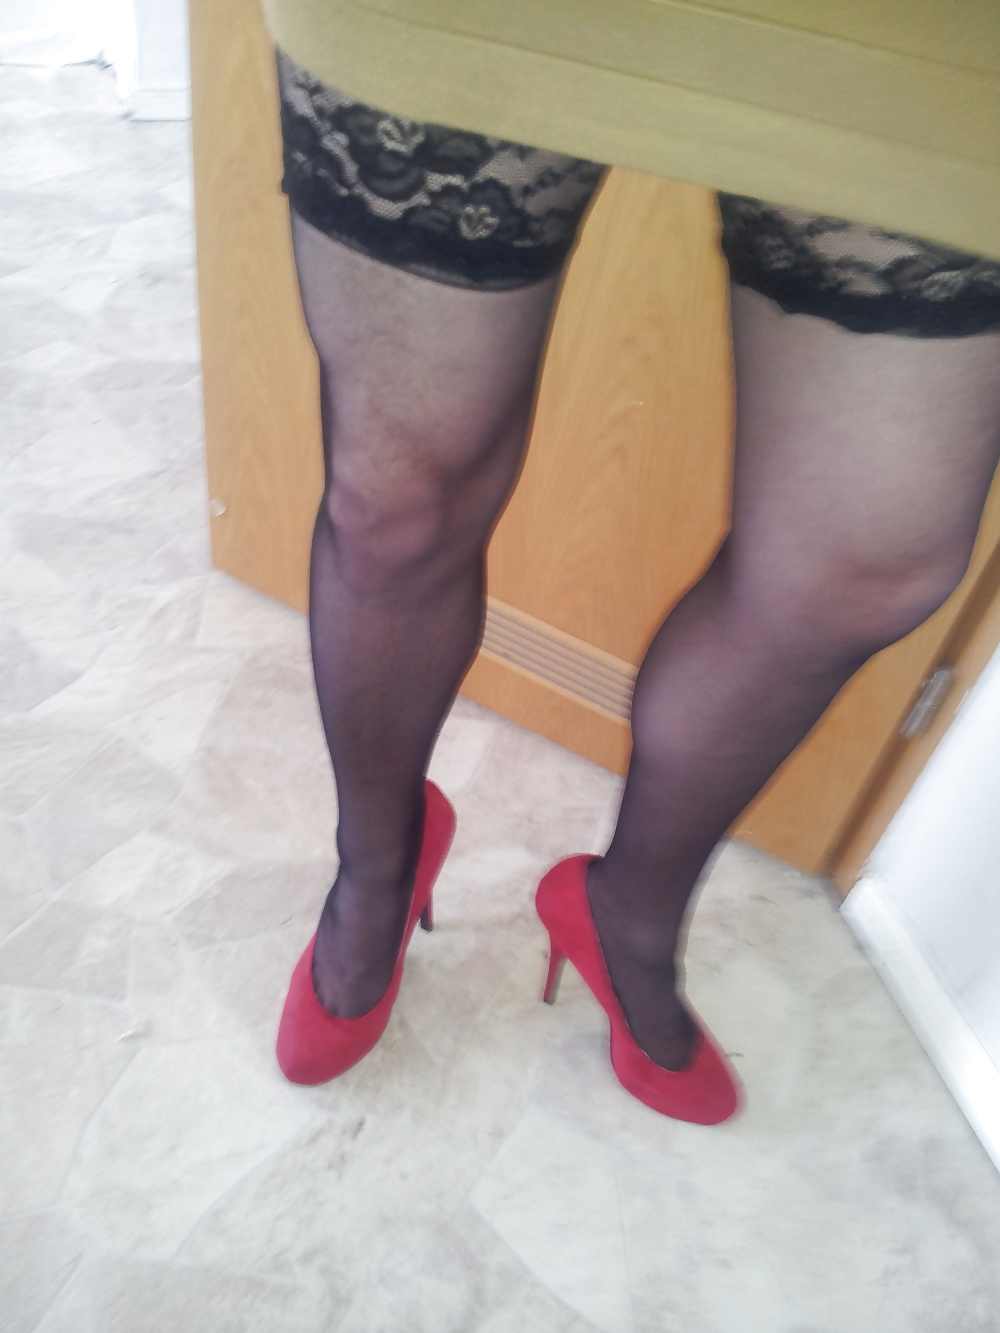 Meine neuen Red High Heels adult photos